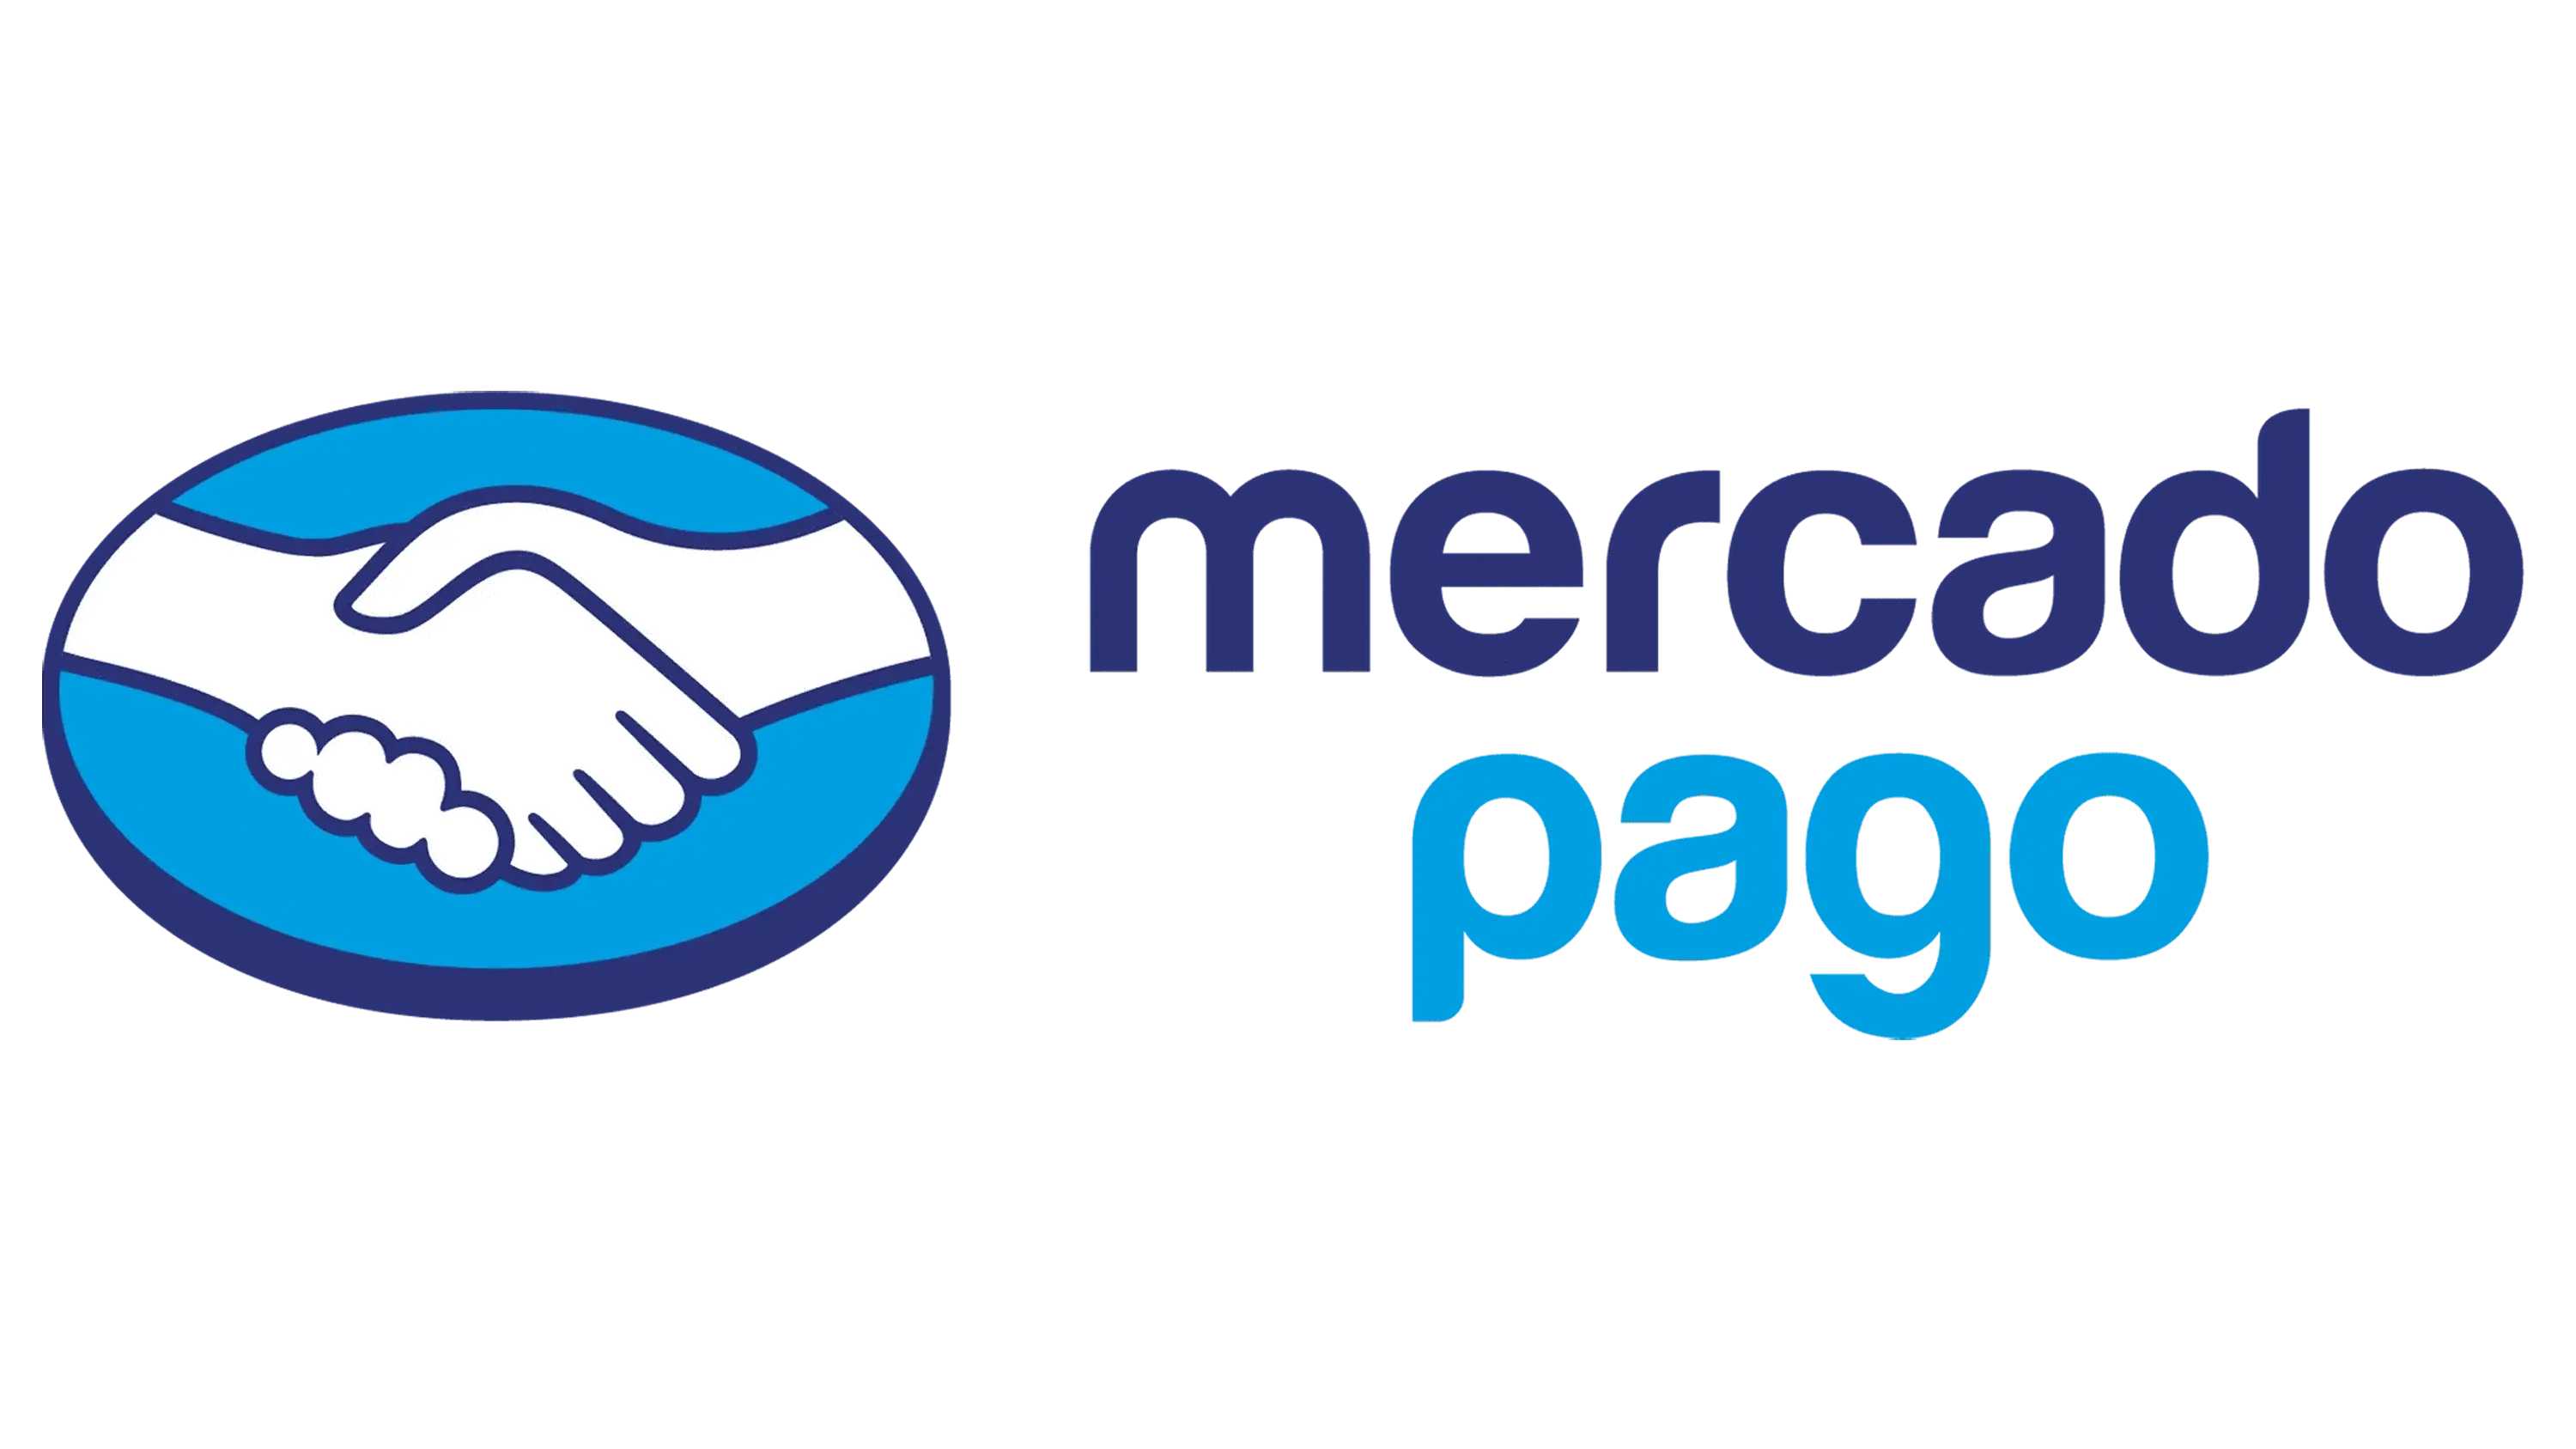 Mercado Pago's logo